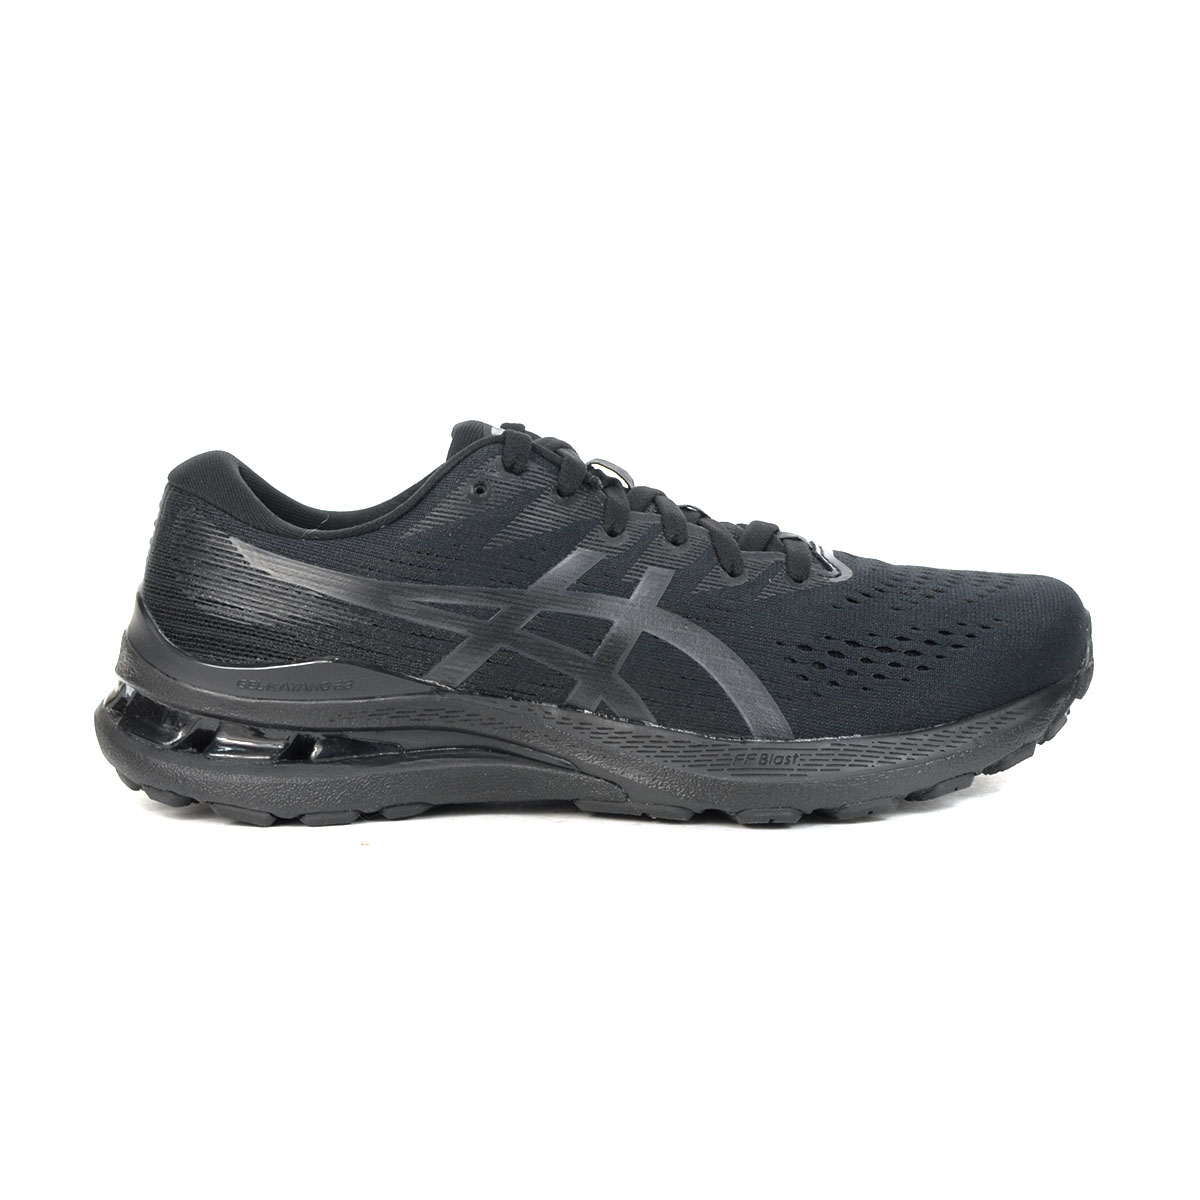 ASICS Men's Gel-Kayano 28 Black/Graphite Grey Running Shoes 1011B189.001